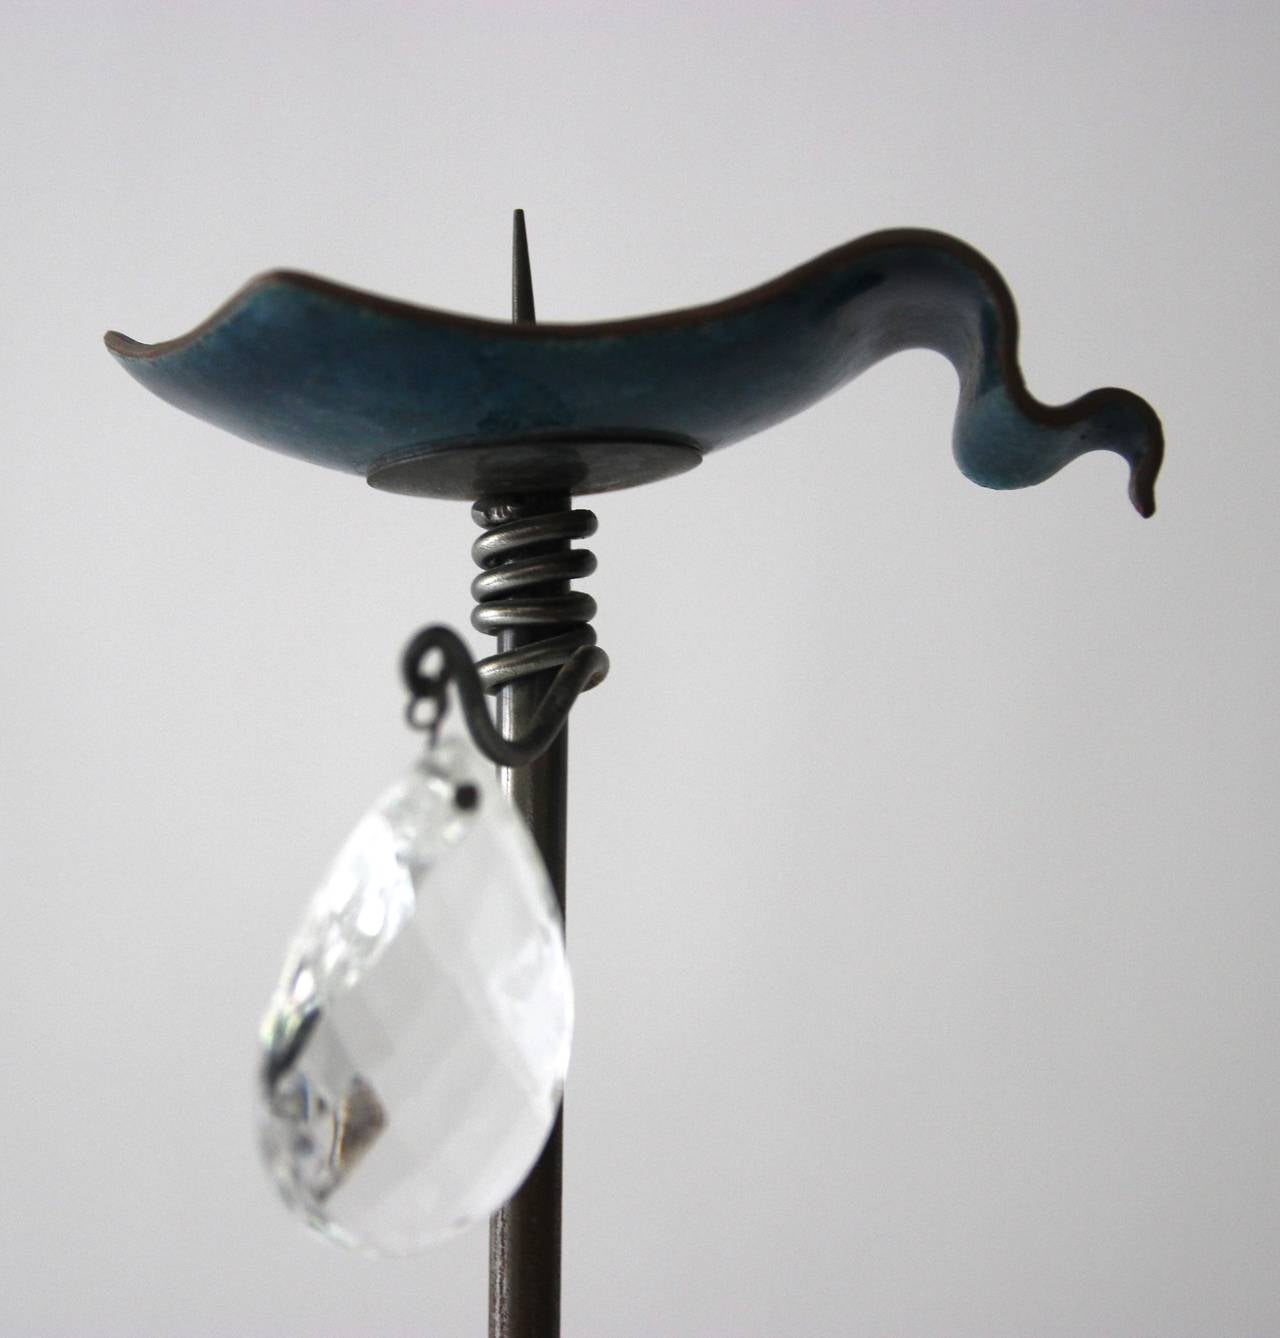 Toni Cordero, chandeliers,
métal et cuivre émaillé, socle en pierre.
Studio de production Del Campo, vers 1980, Italie.
Hauteur : 77 cm, diamètre : 10 cm.